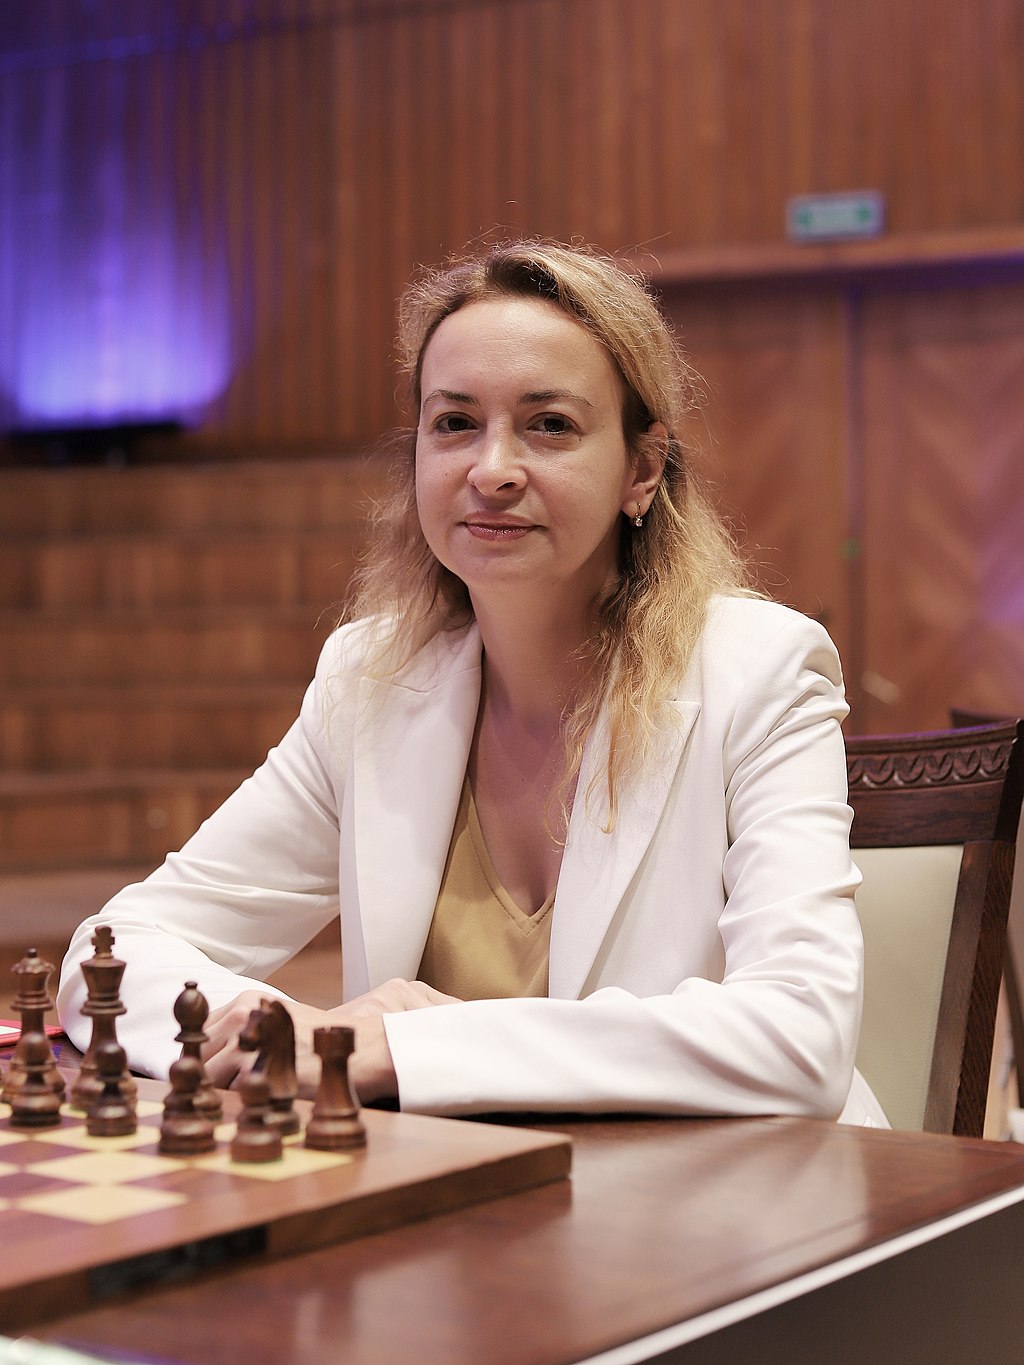 Women's World Chess Championship 2023 - Wikiwand